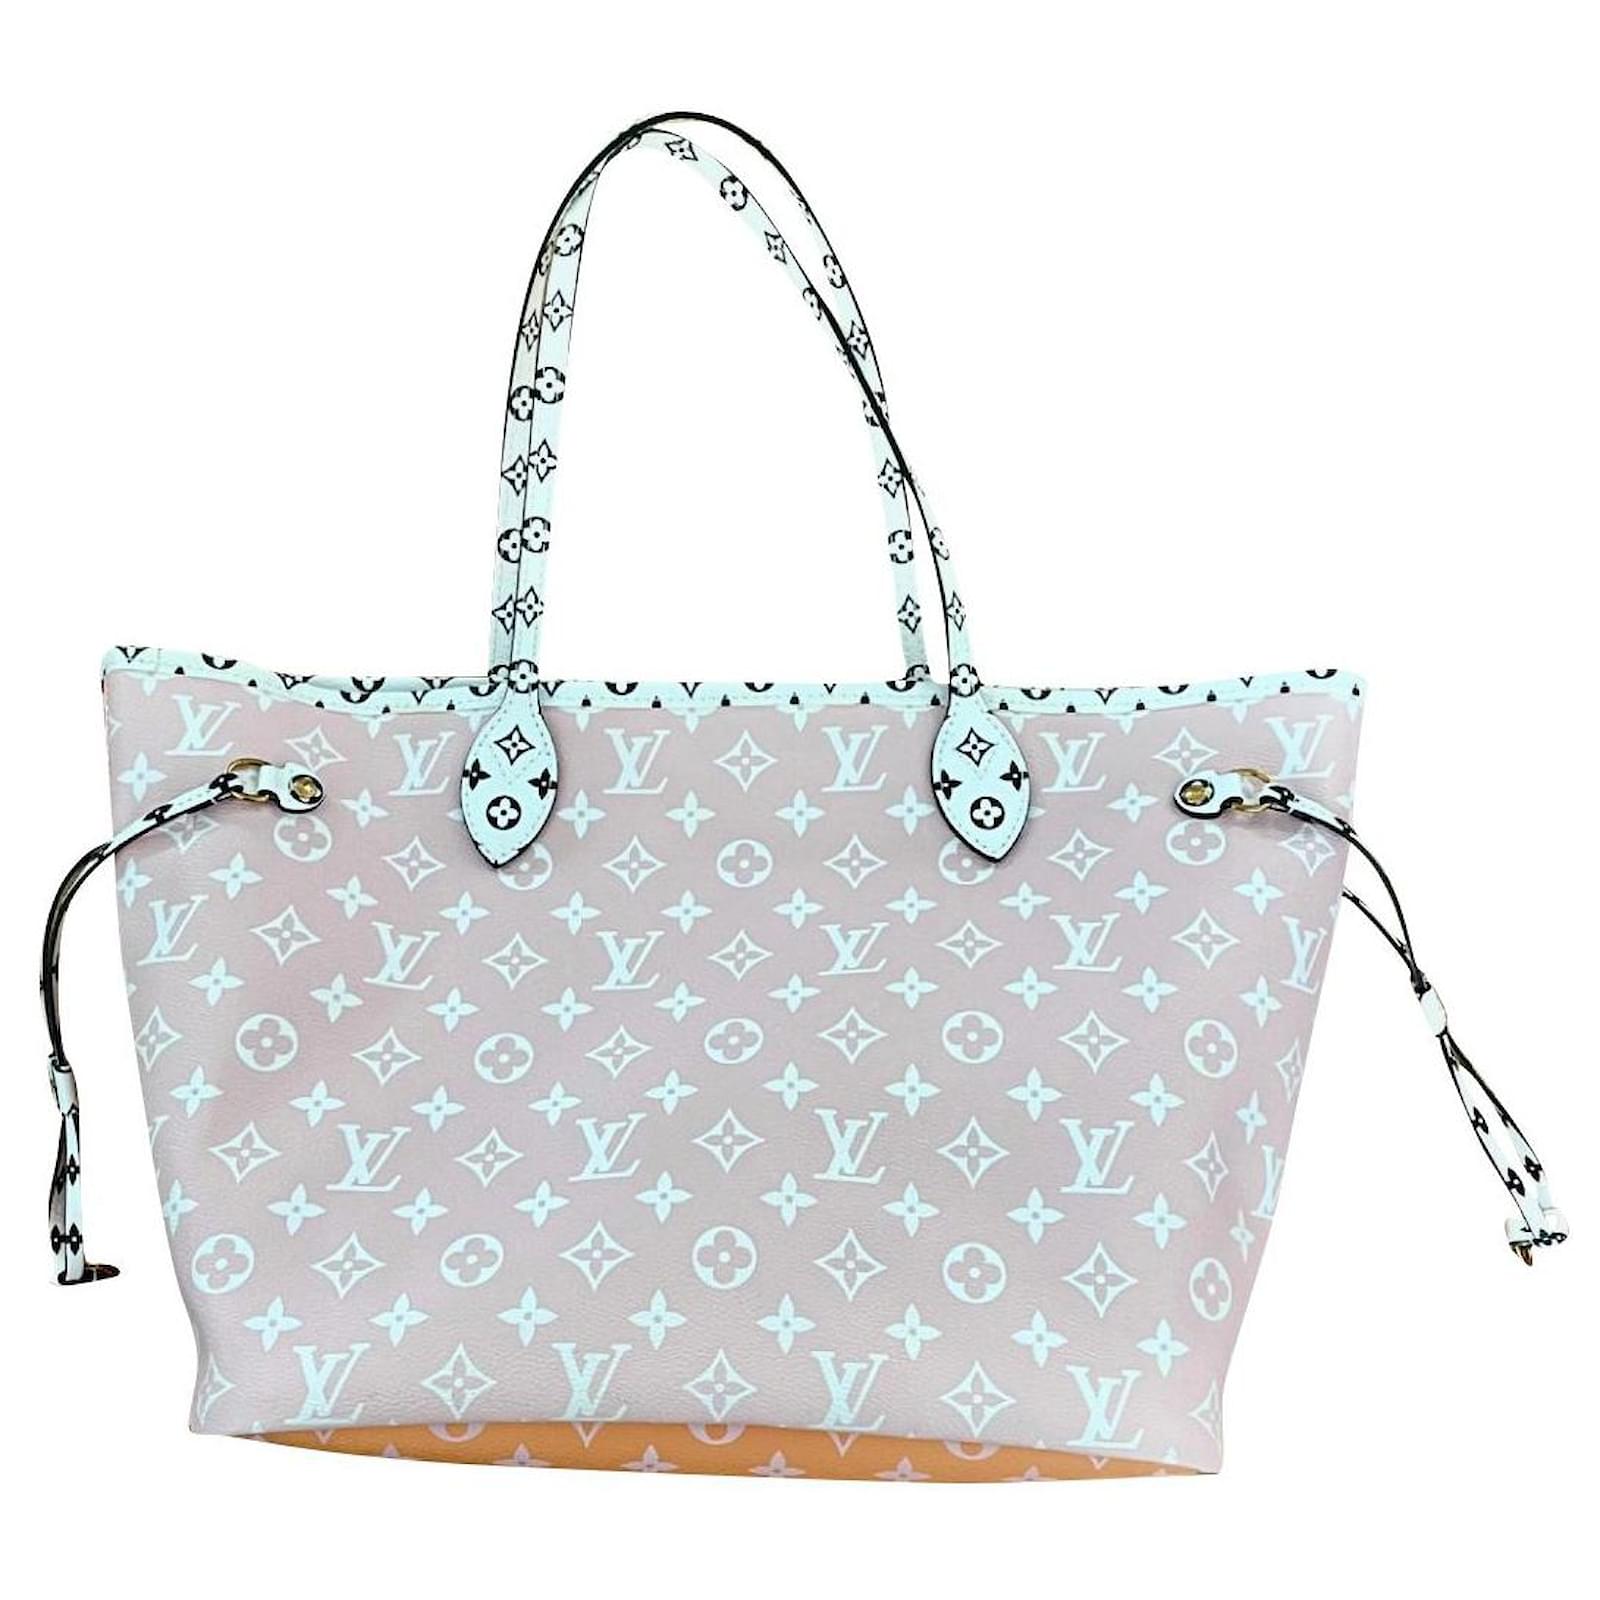 Handbags Louis Vuitton Neverfull